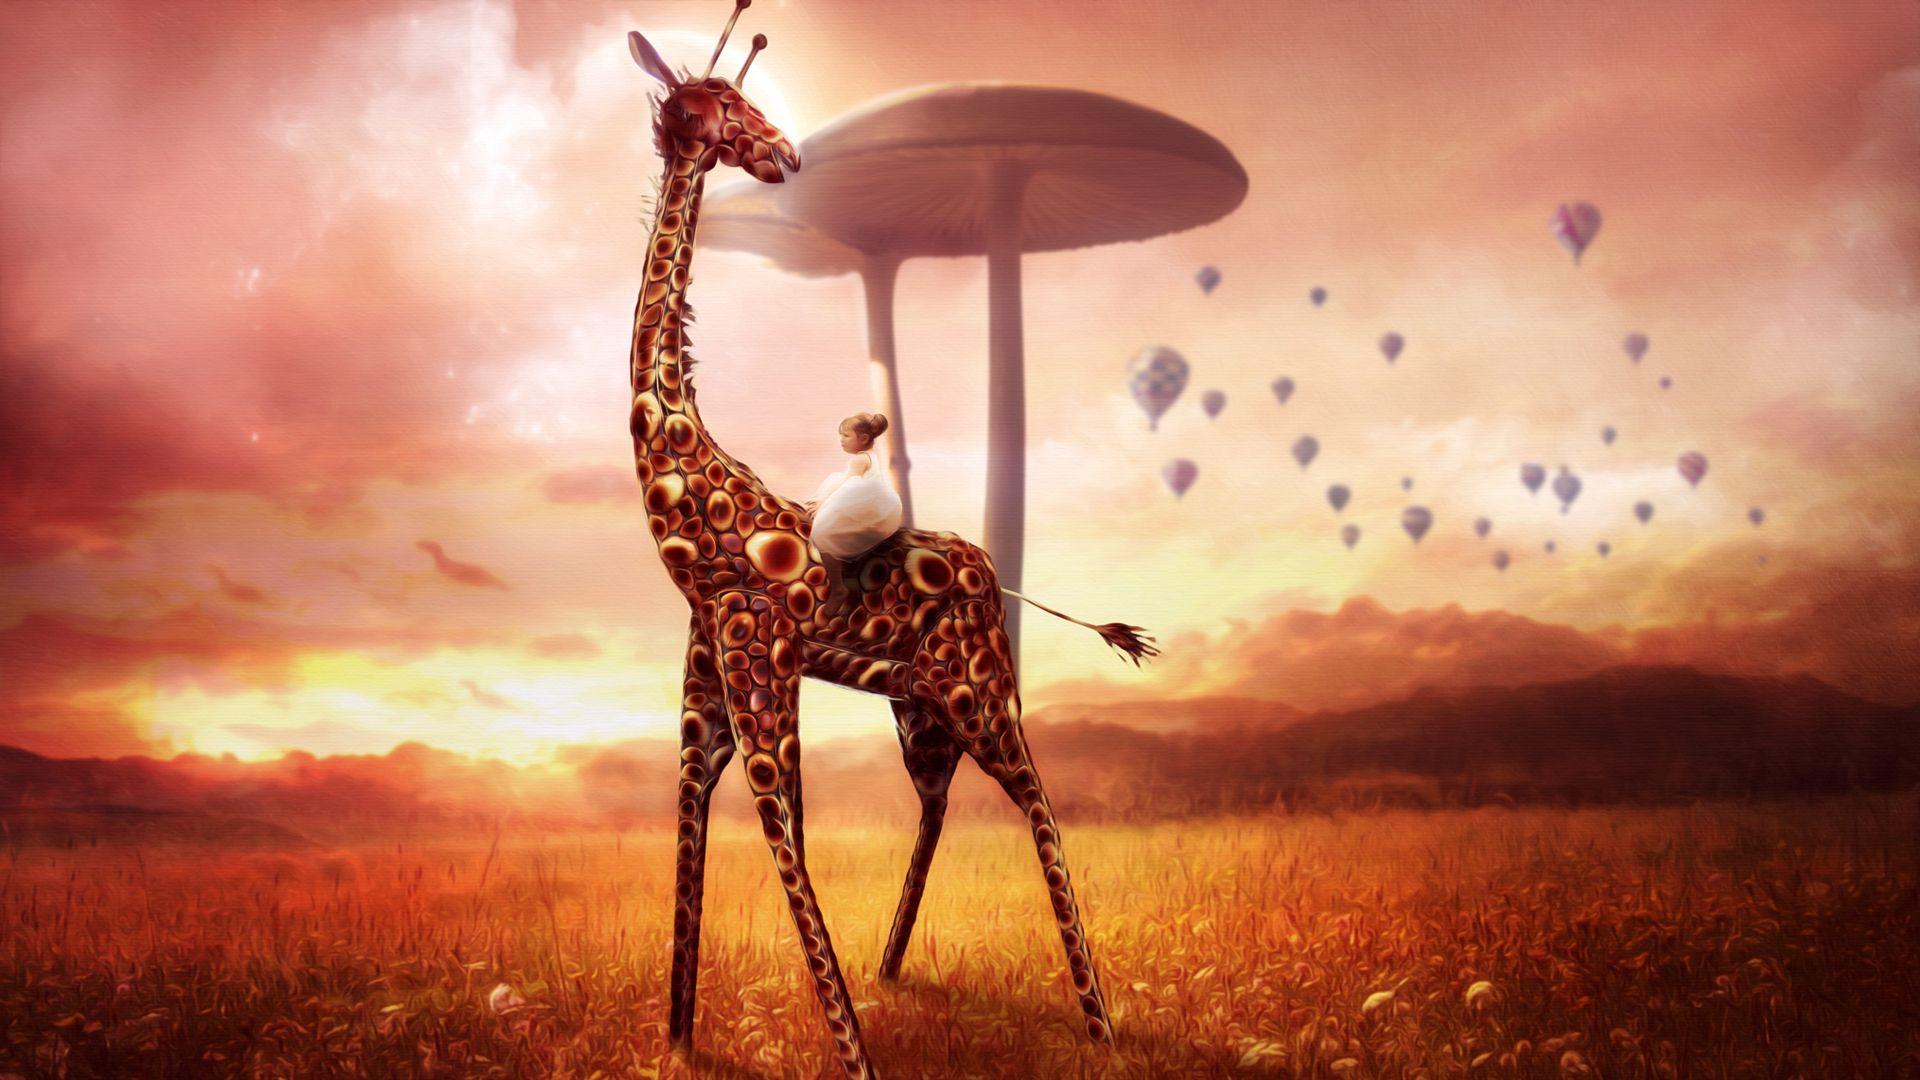 Giraffe Dream Wallpaper